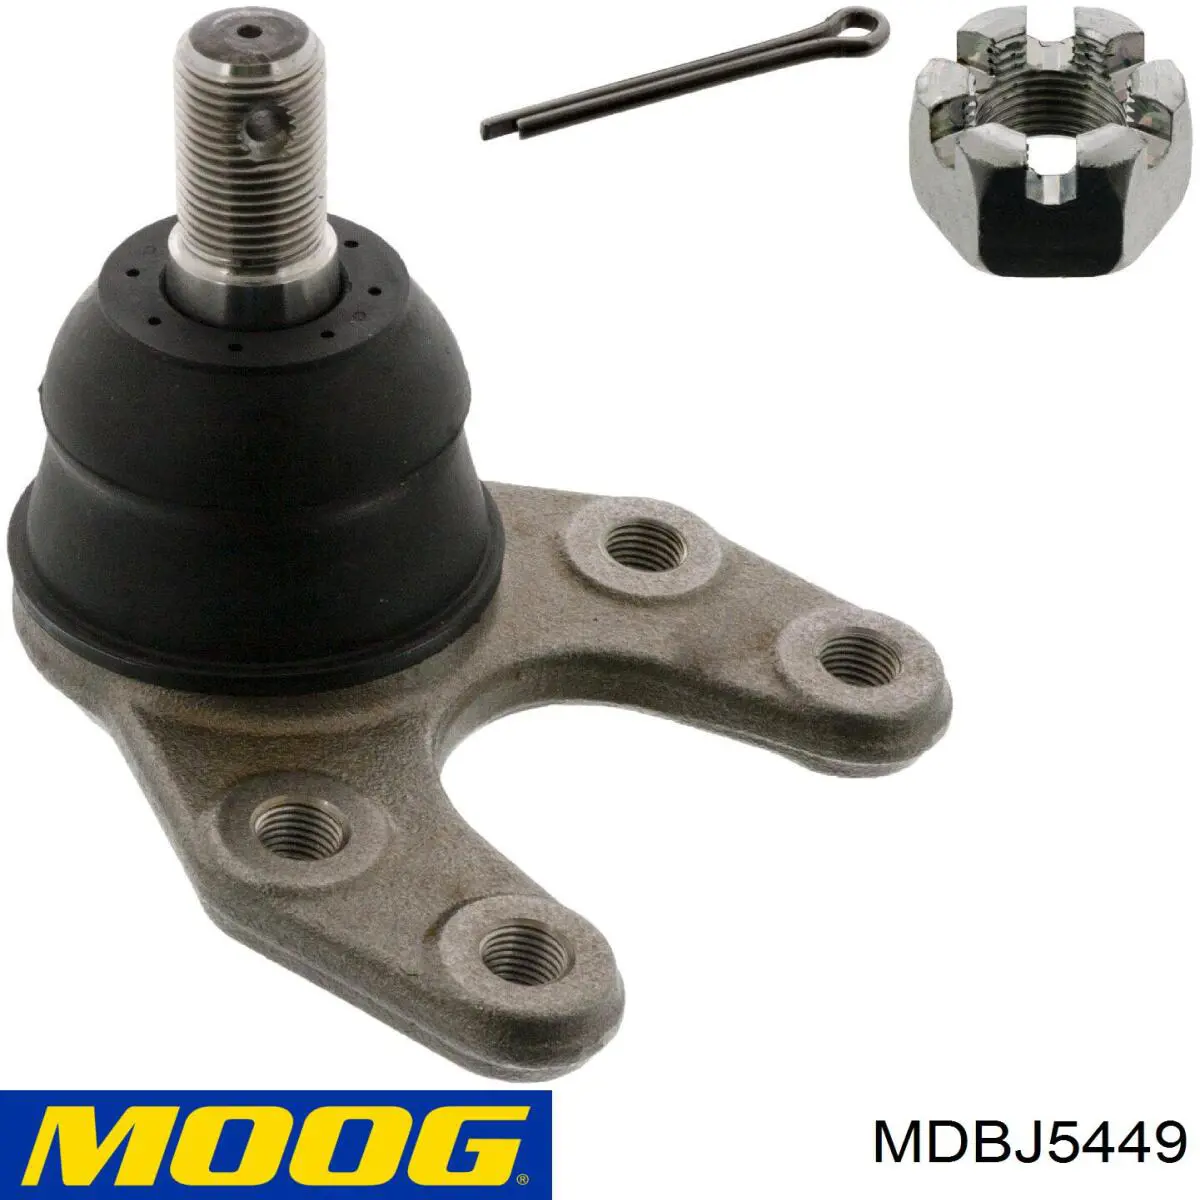 Rótula de suspensión inferior MDBJ5449 Moog